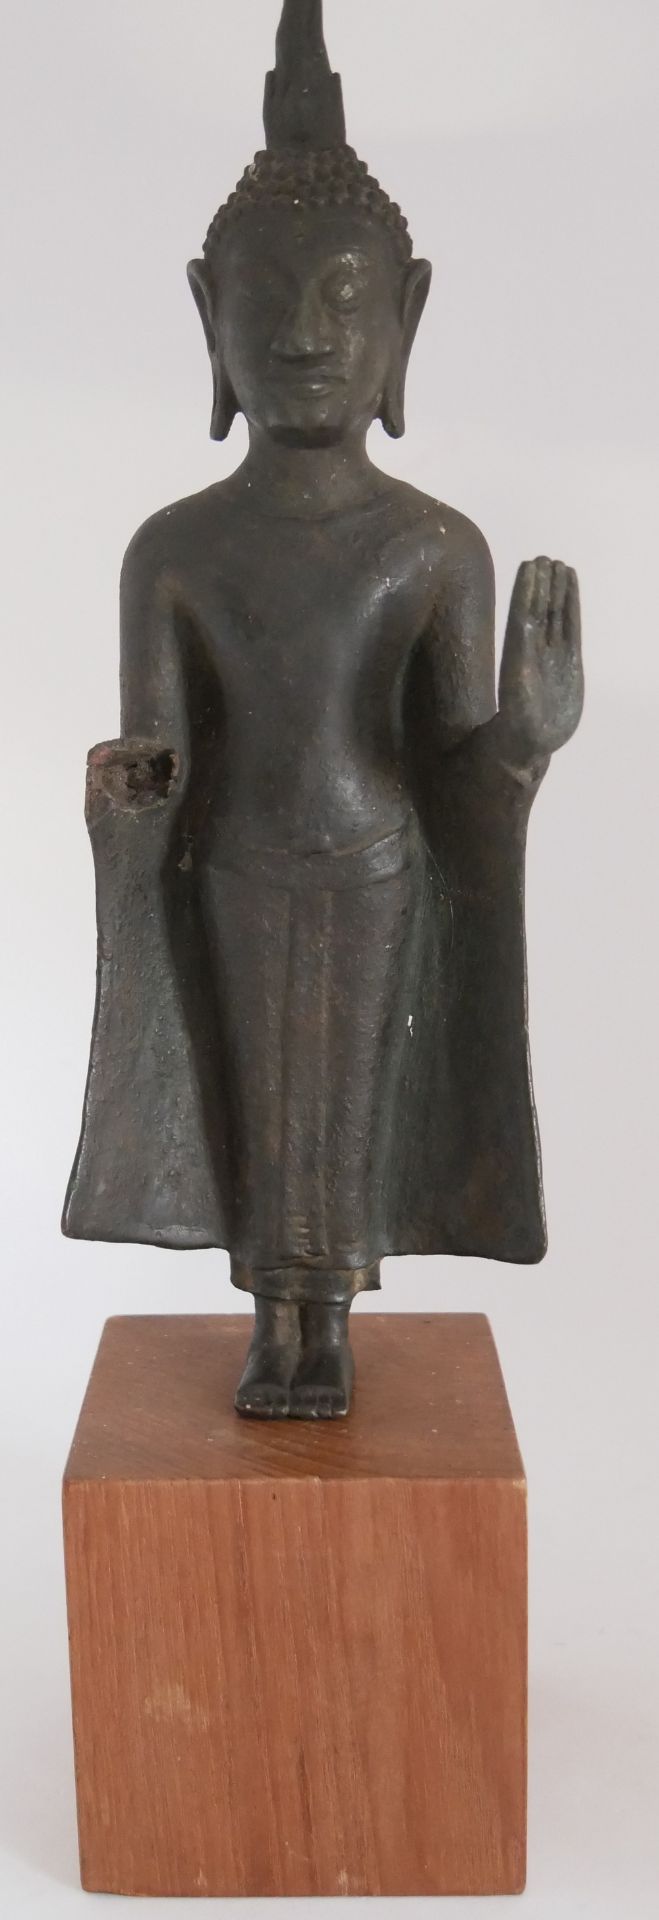 Stehender Abhaya Schutz Buddha Statue, 1 Arm fehlt. Wohl Thailand auf Holzsockel. Höhe ca. 24 cm.